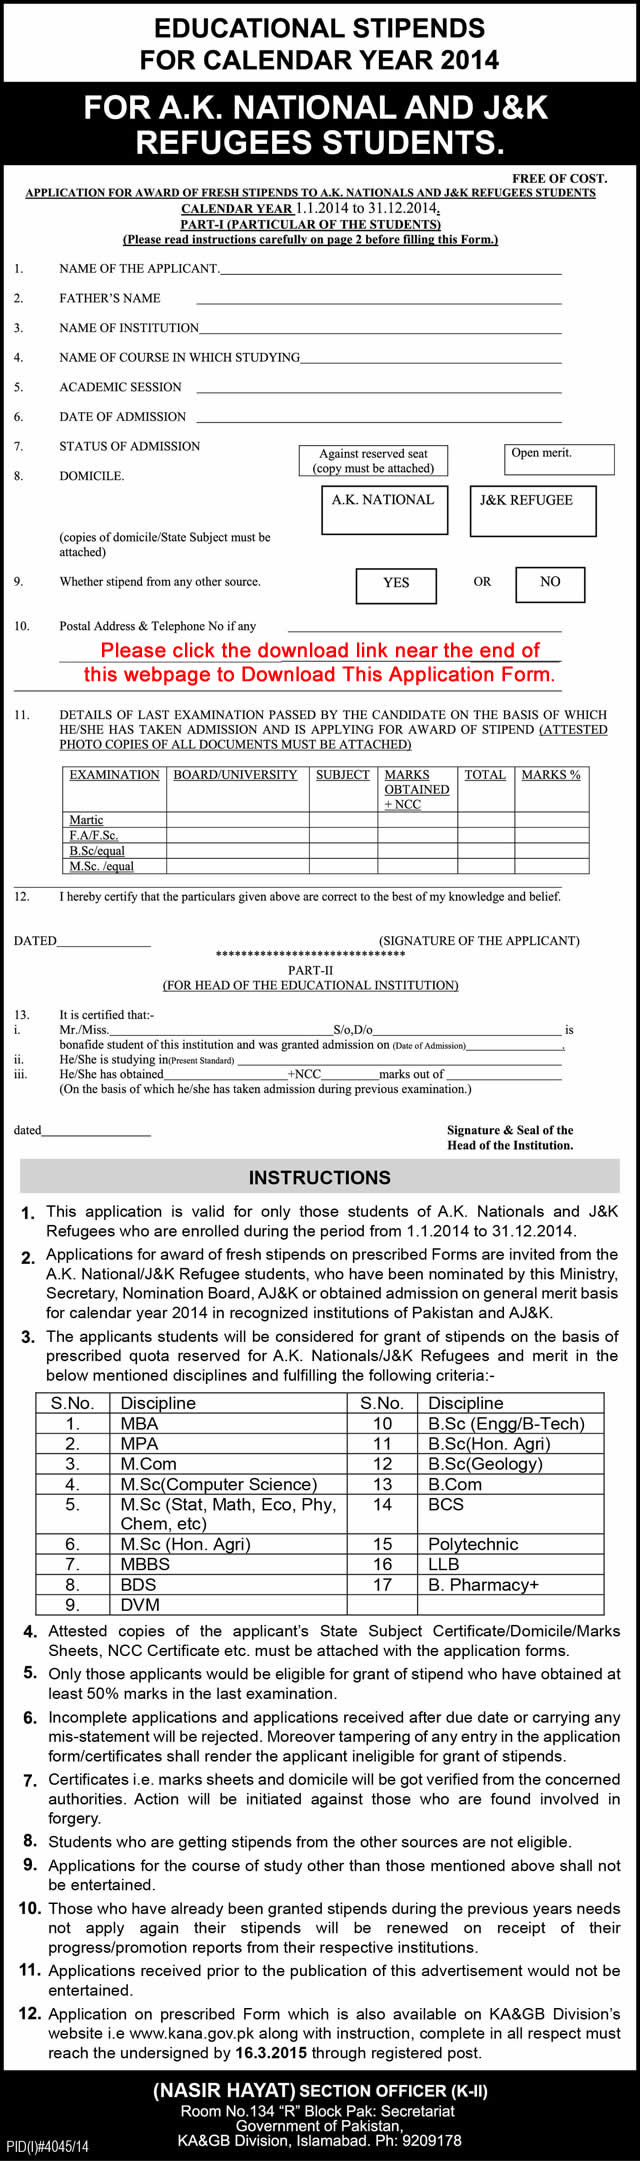 Educational Stipends for AJK & Jammu Kashmir Refugees Students 2014 - 2015 Application Form